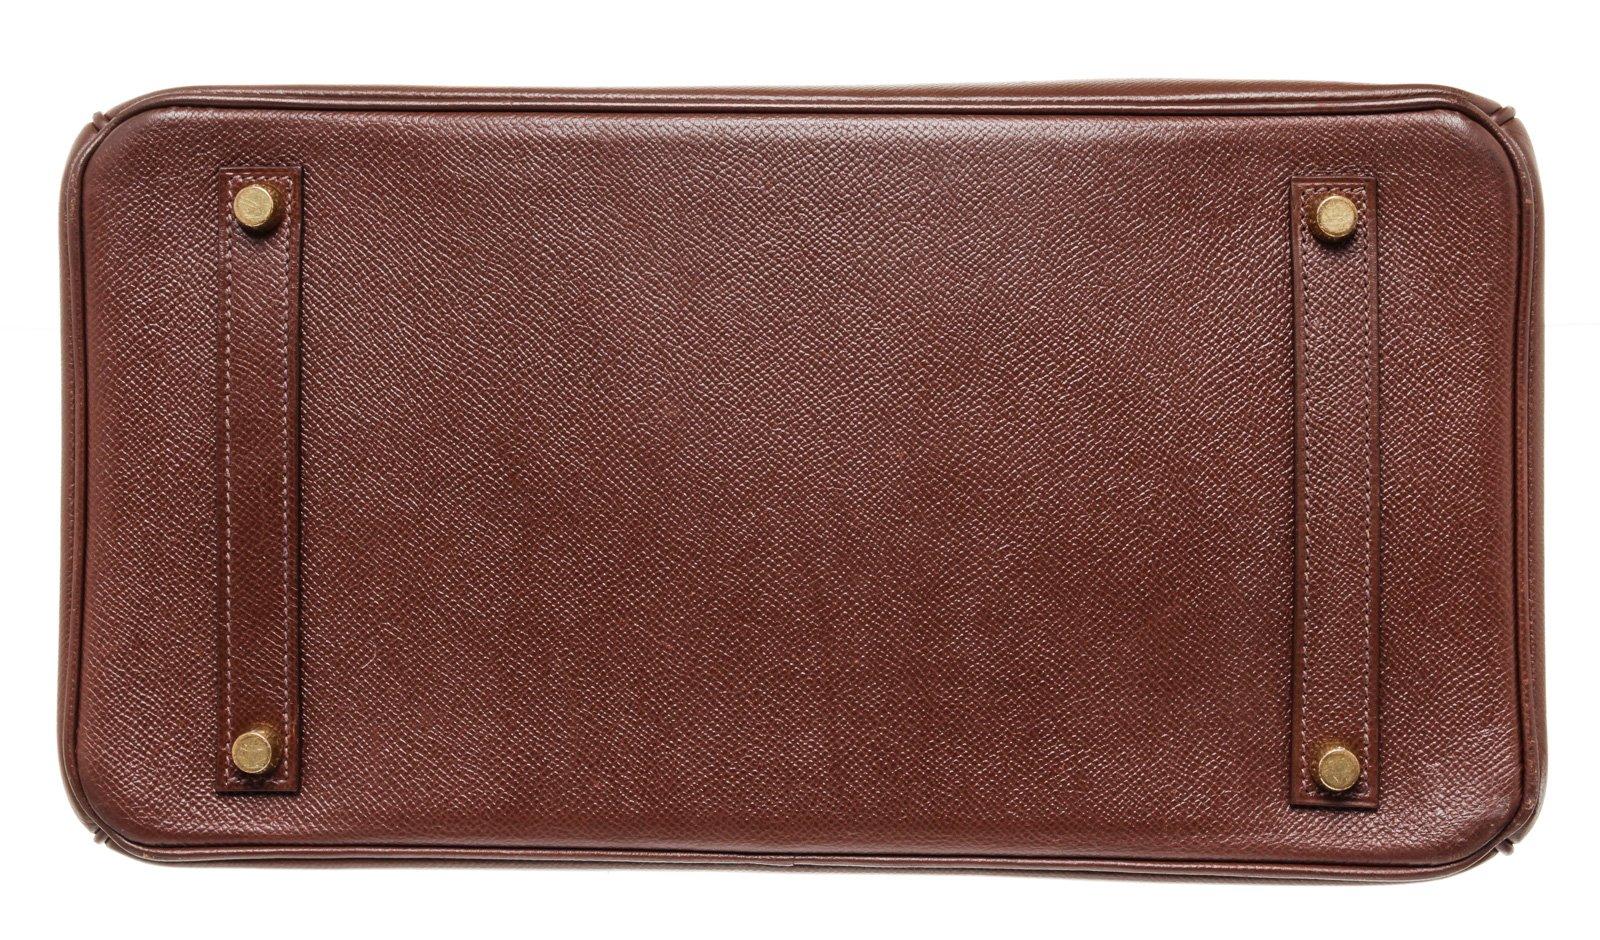 Women's or Men's Hermes Brown Leather Birkin 35cm Satchel Bag